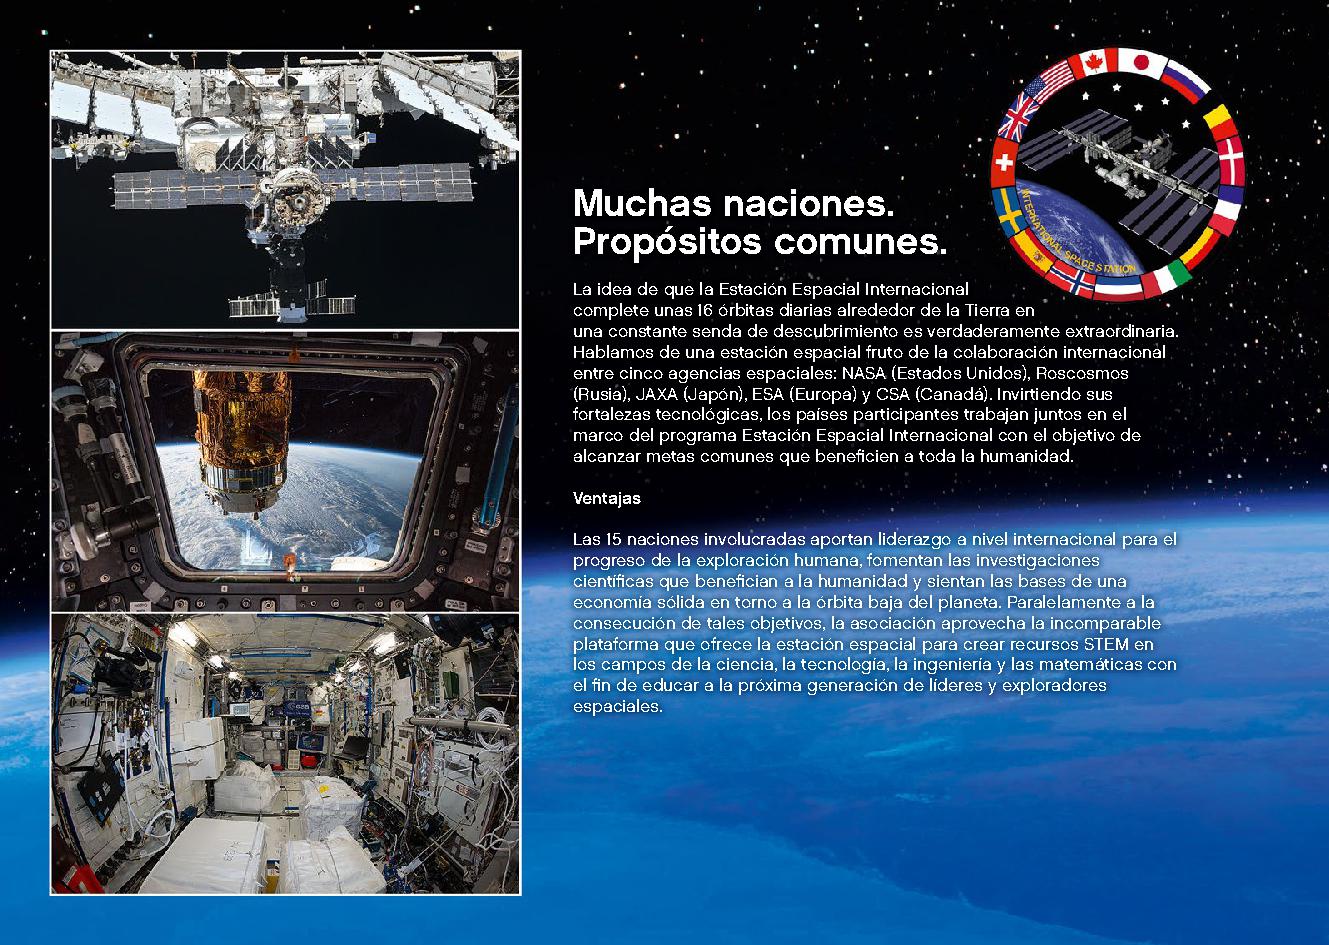 국제 우주 정거장 21321 레고 세트 제품정보 레고 조립설명서 24 page